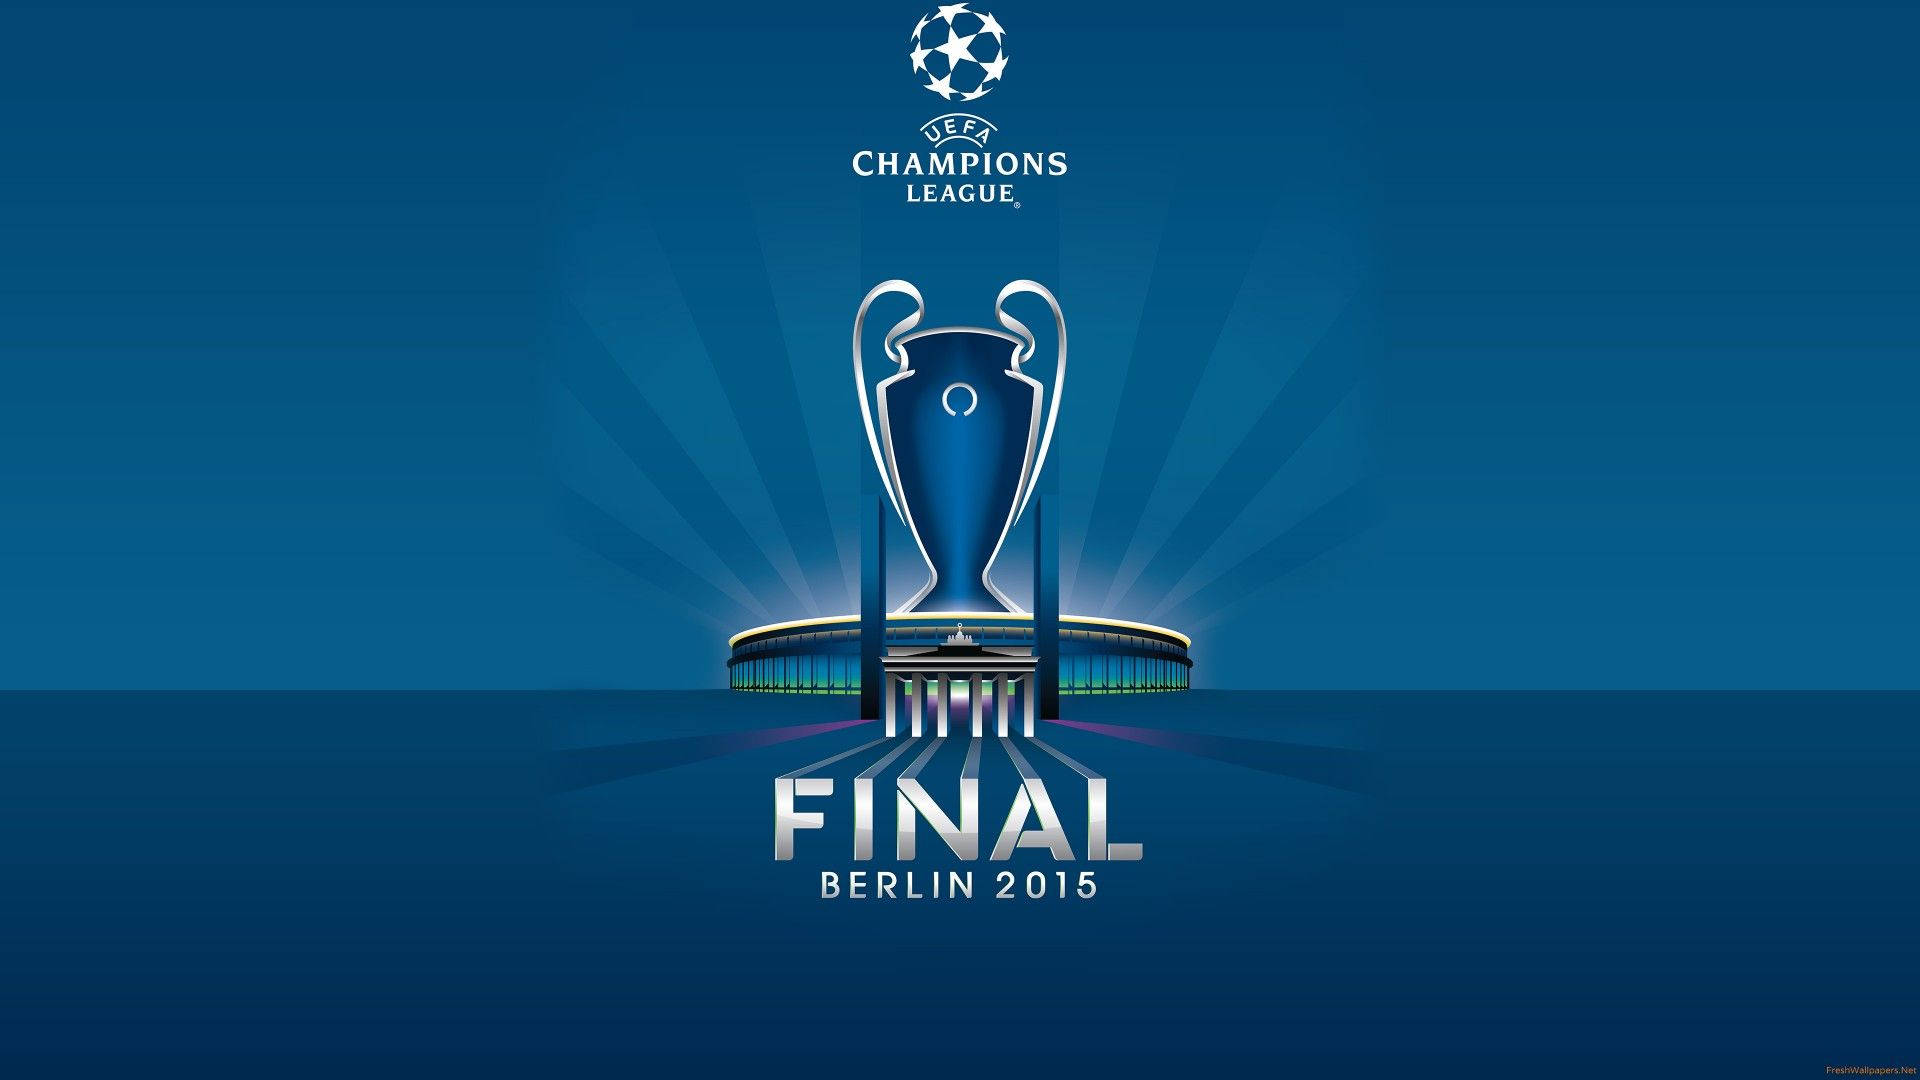 Berlin 2015 Final Champions League Wallpaper